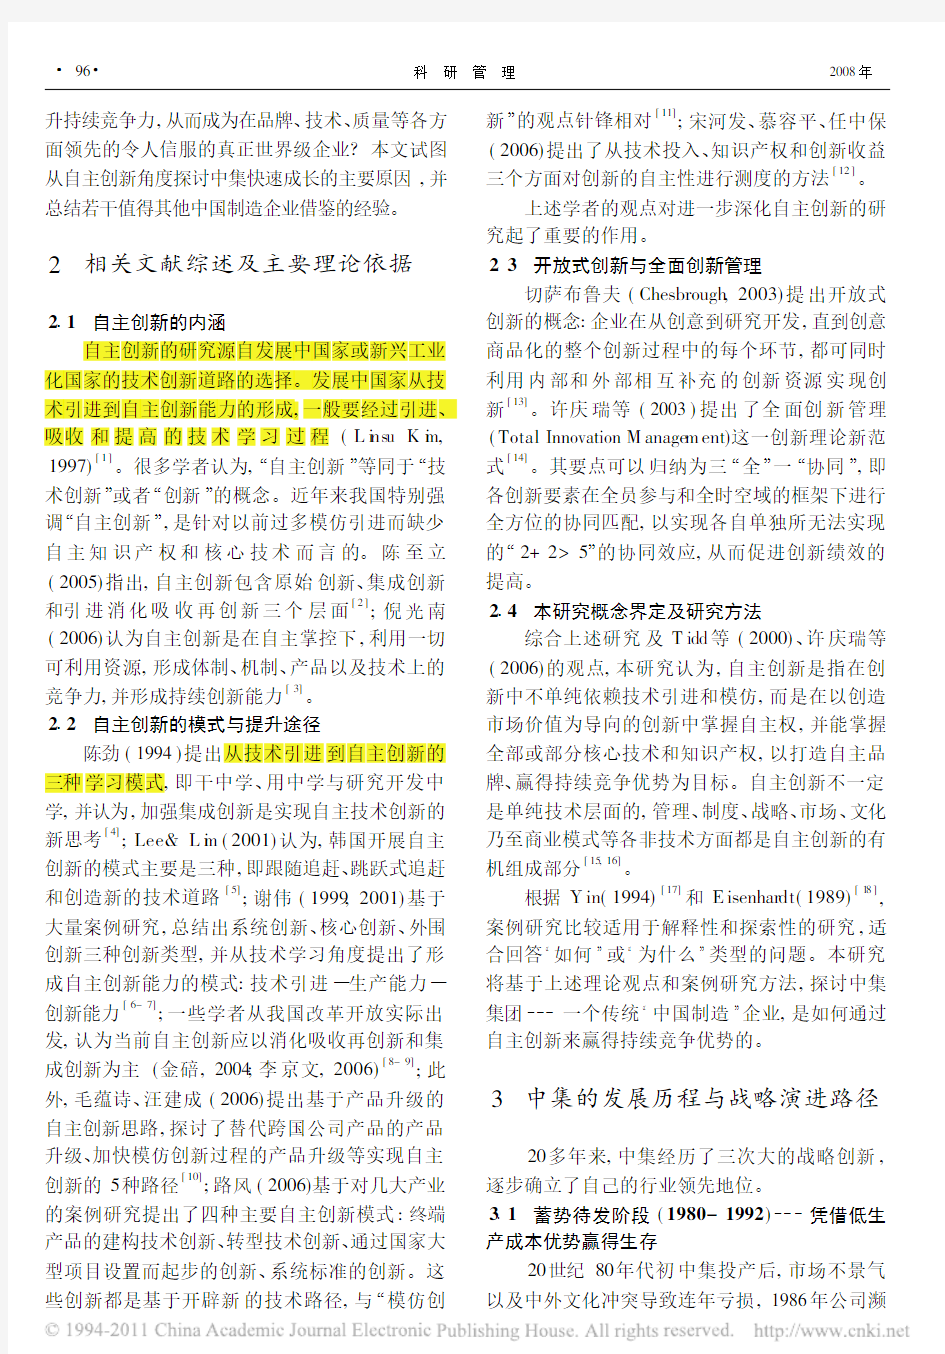 (2008科研管理)中国制造_如何通过开放式自主创新提升国际竞争力_中集集团自主创新模式的案例研究